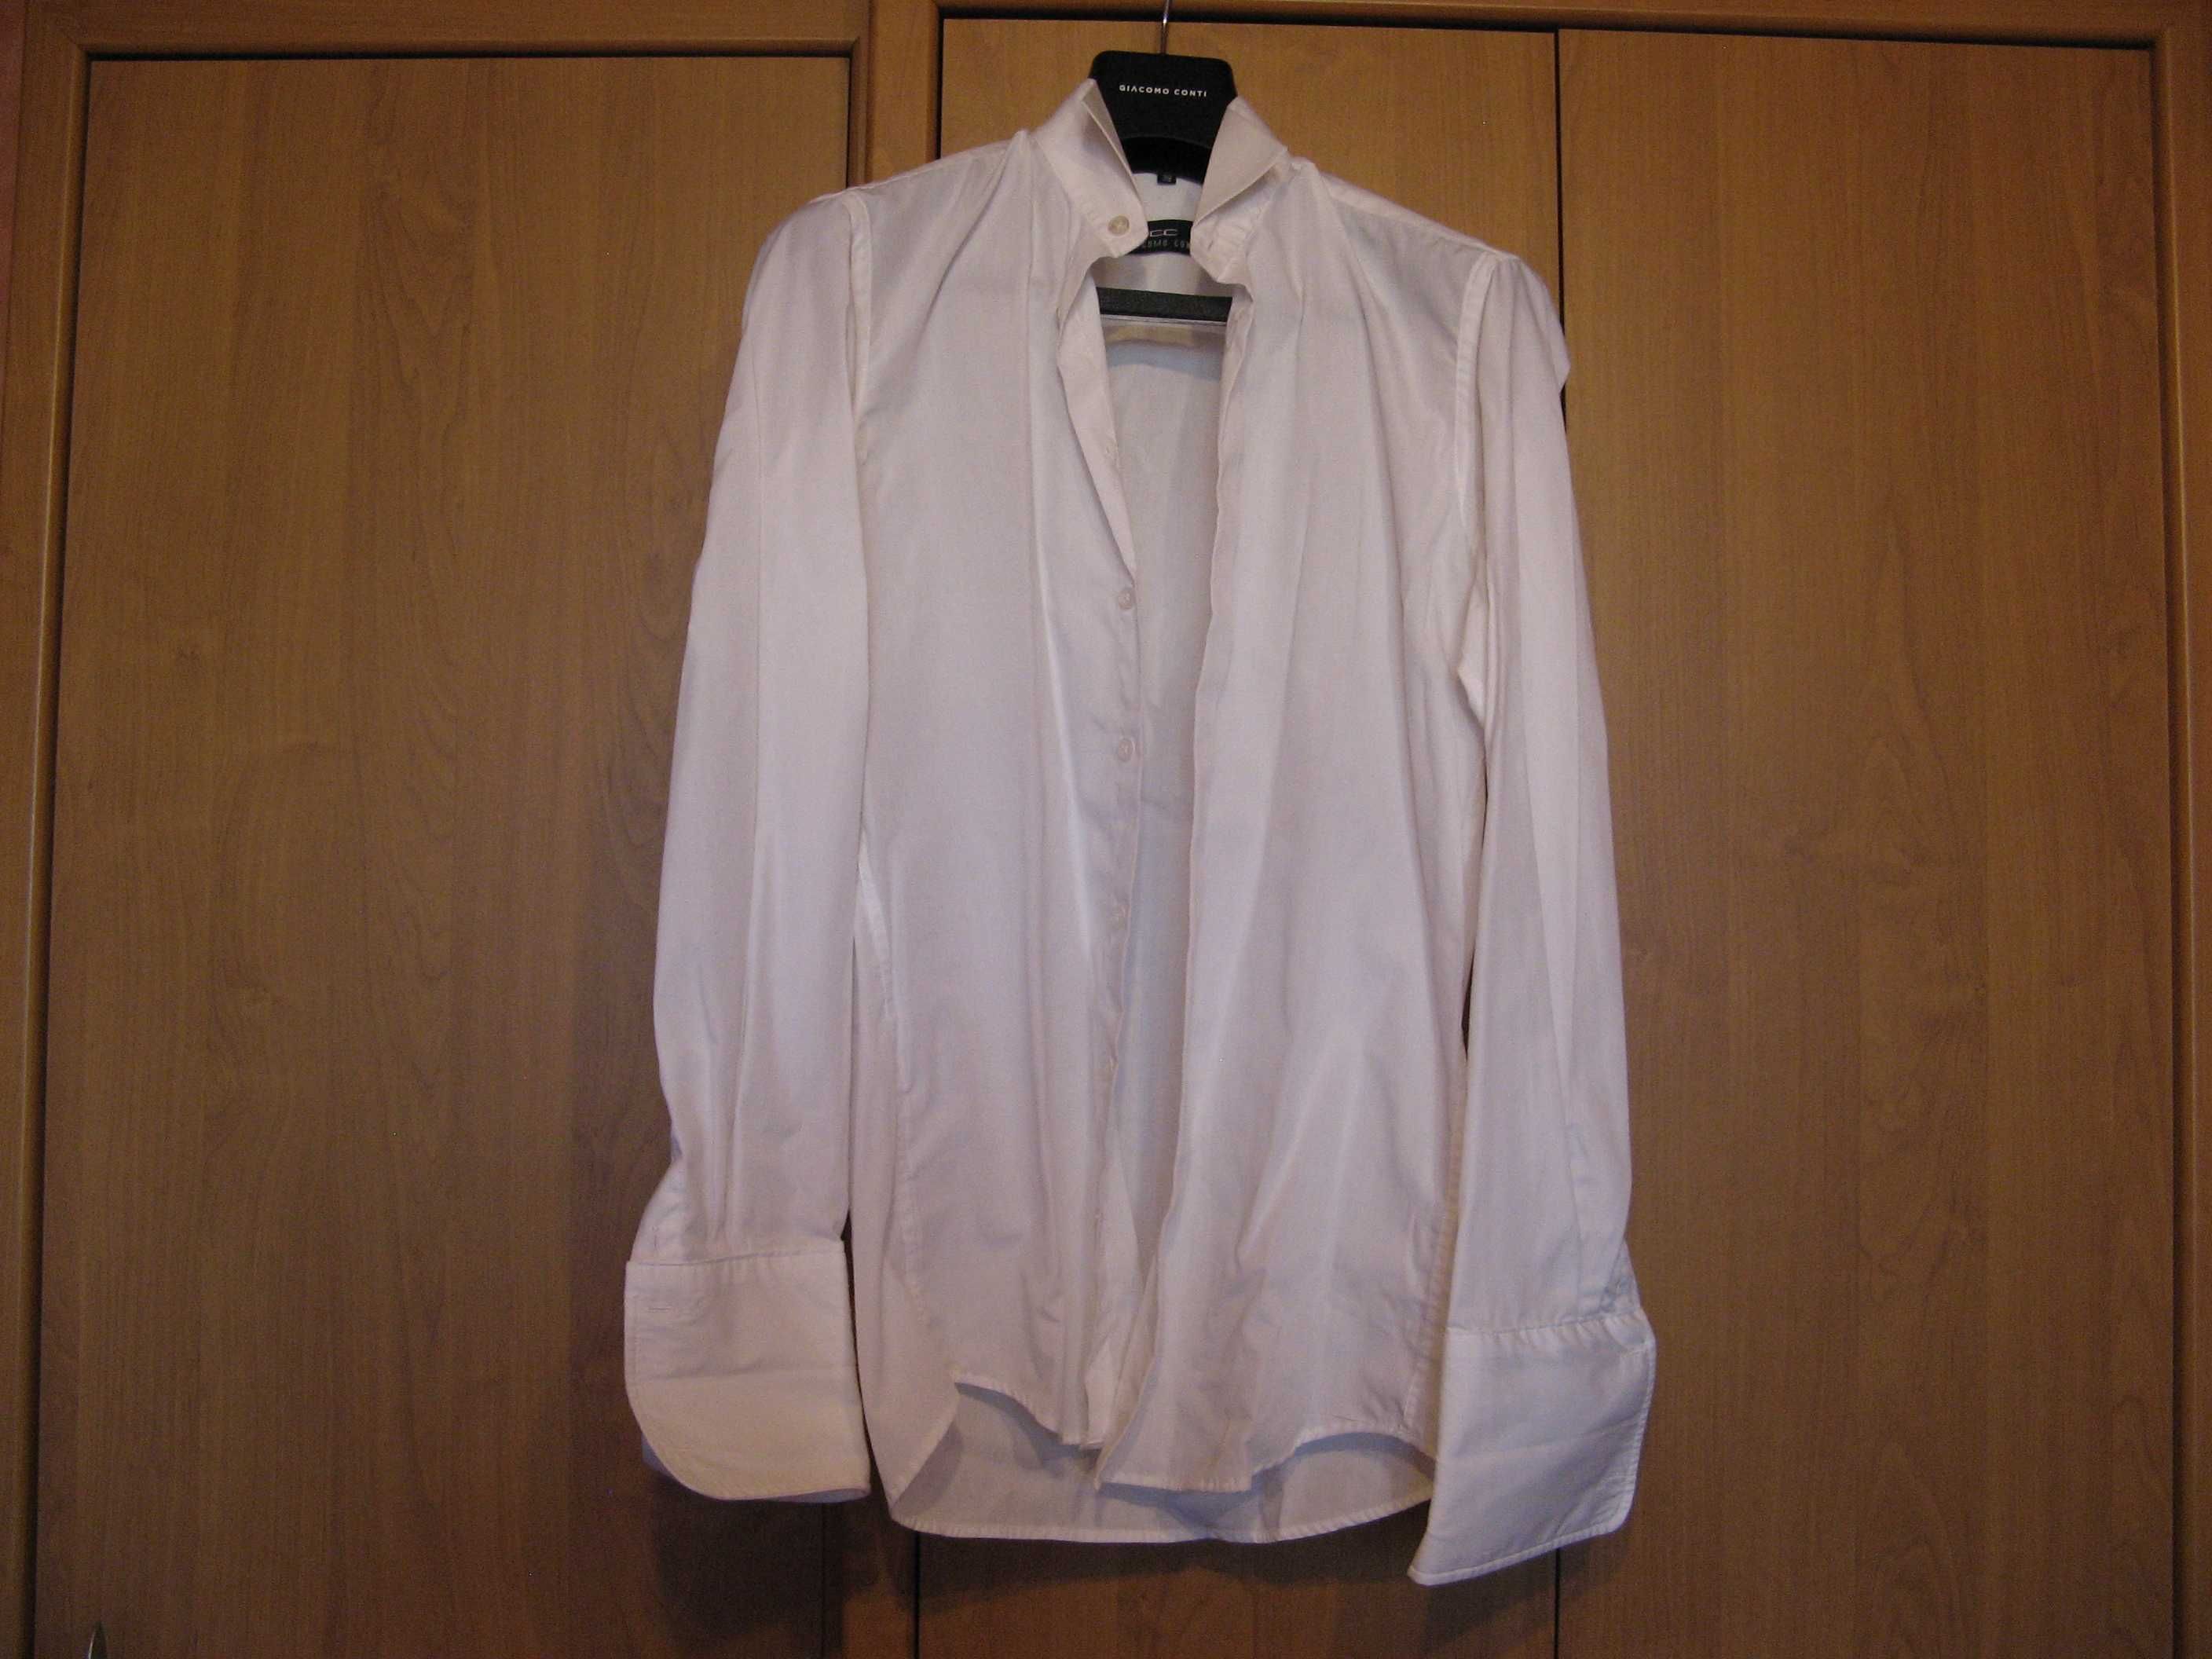 Zestaw czarny smoking ,garnitur ślubny  i koszule białe